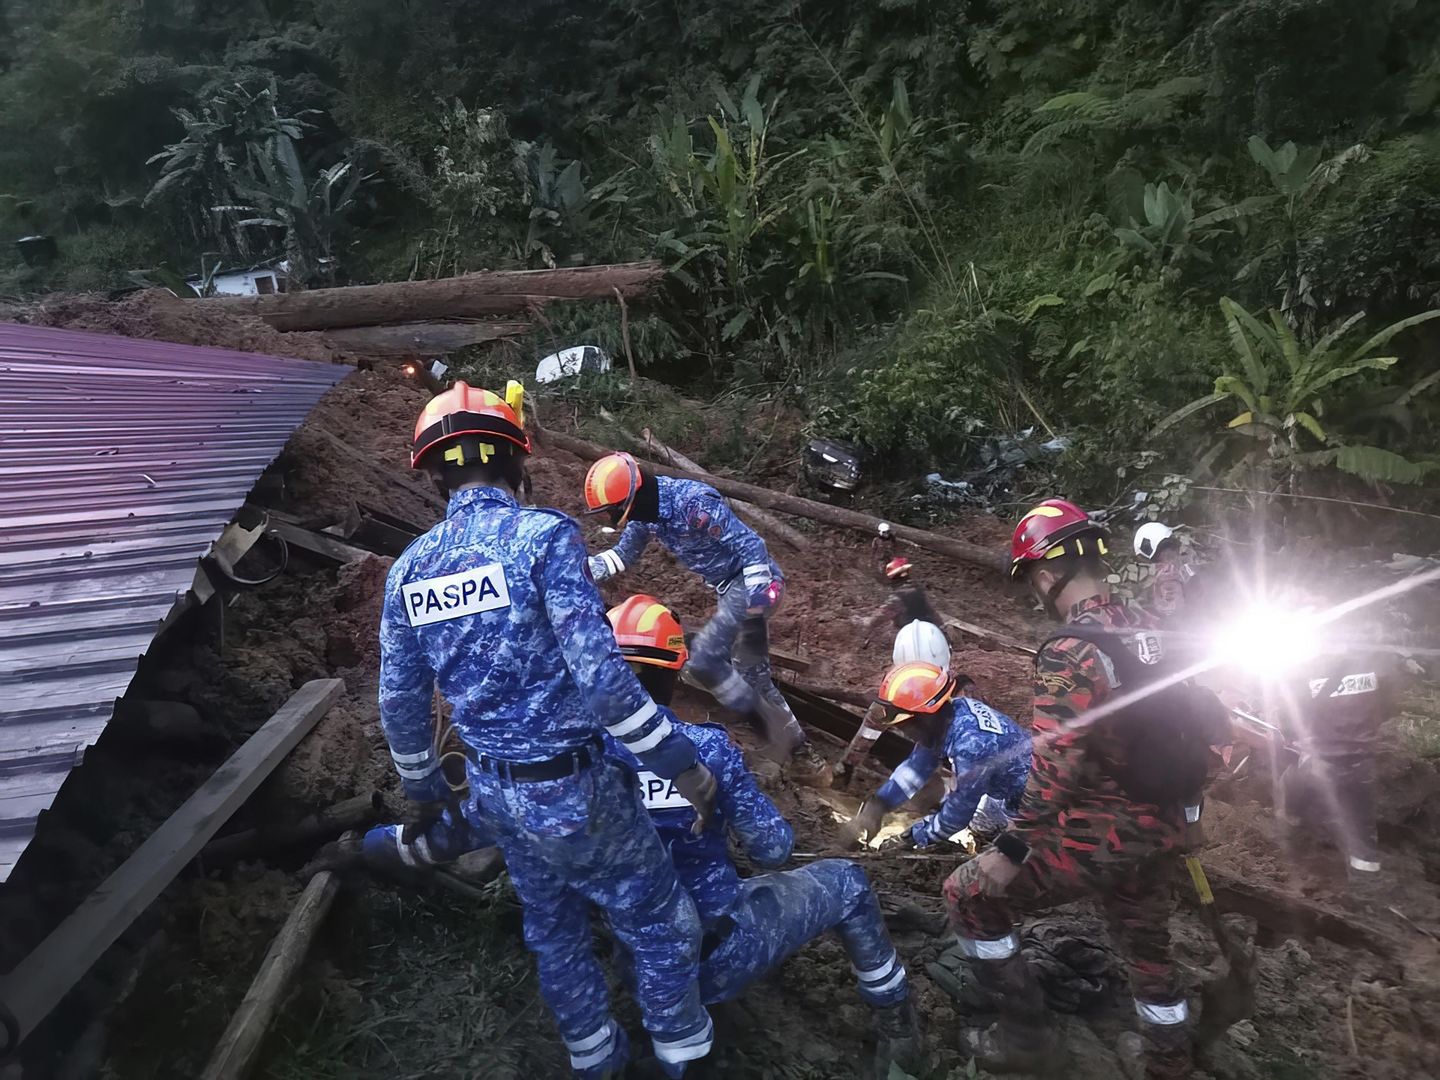 Malezya'daki kamp alanına toprak kayması sonucu 2 kişi öldü, 51 kişi kayıp